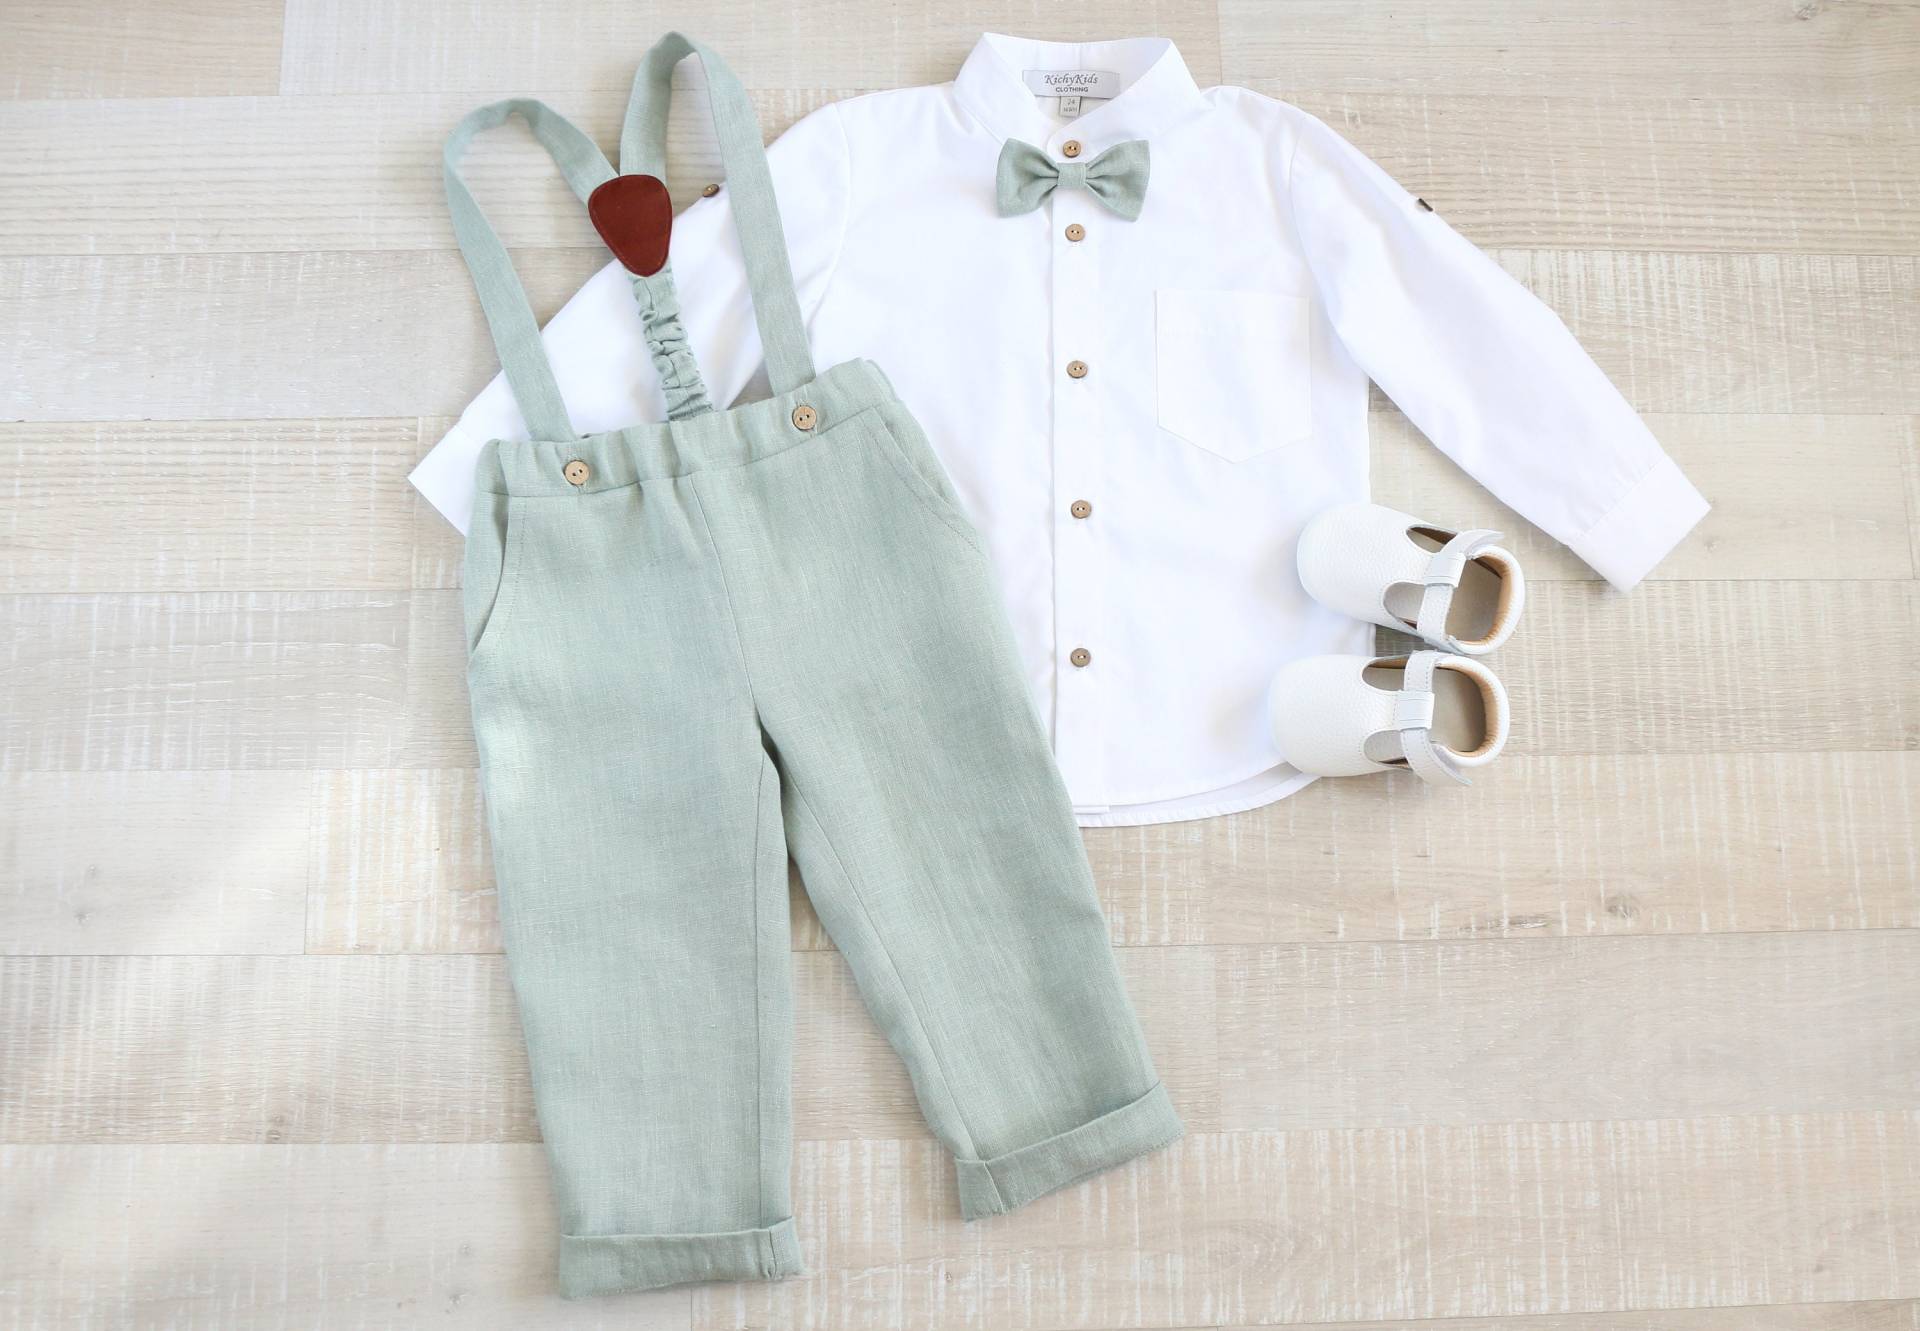 Pagen Junge Eukalyptus Anzug Set, Baby Leinen Trägerhose, Kleinkind Shirt, Taufe Hosenträger Outfit von KichyKidsClothing